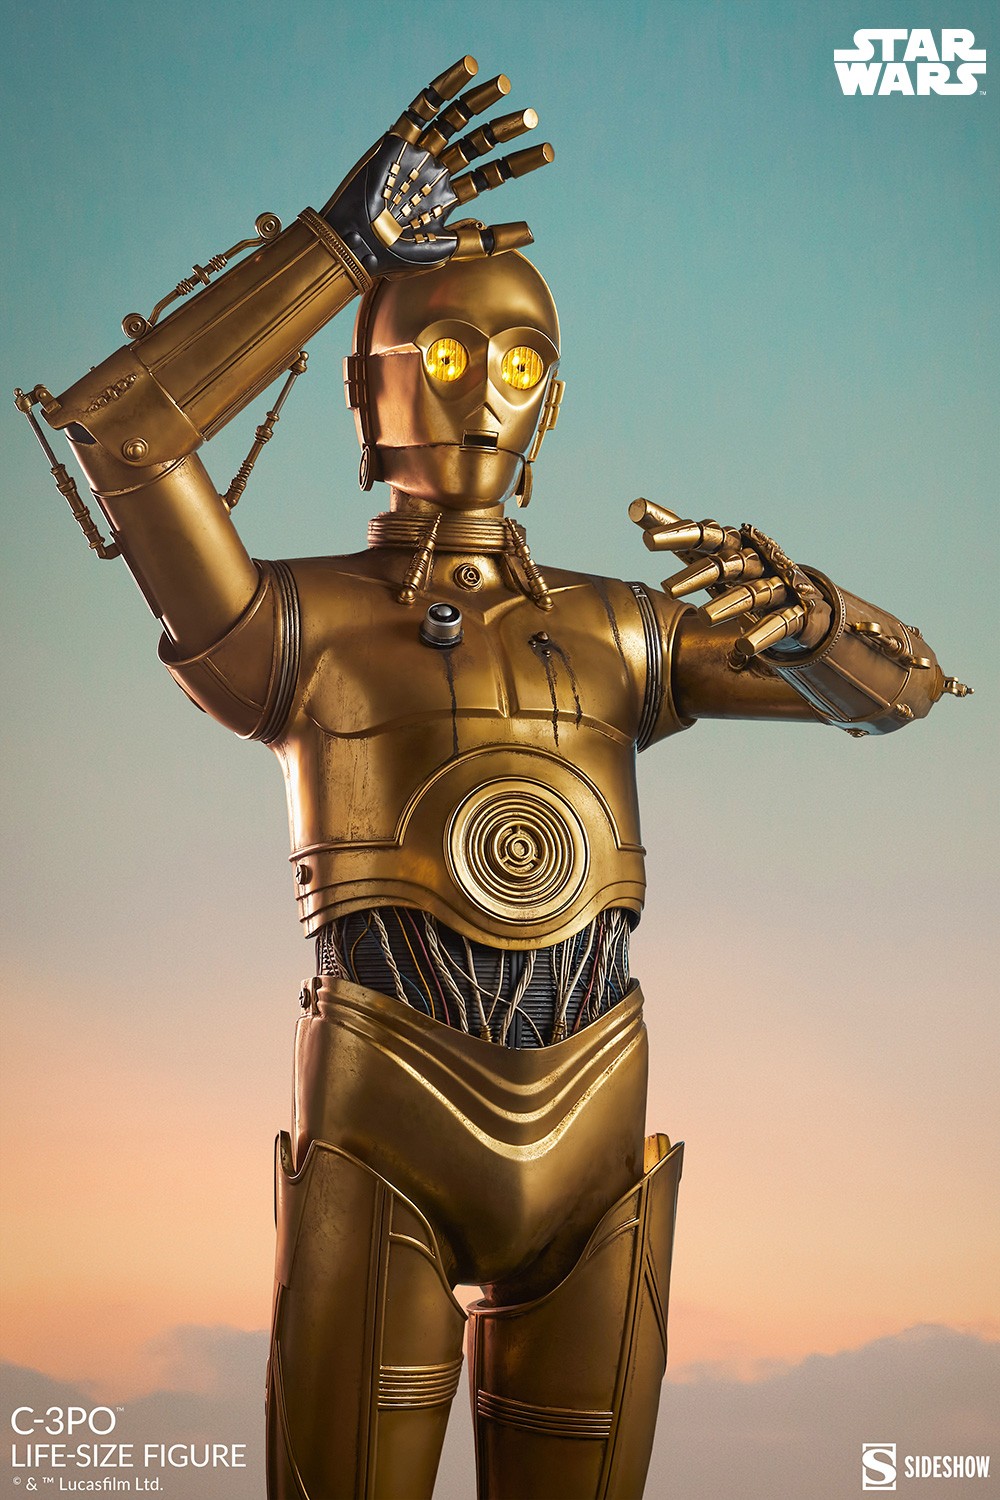 C-3PO- Prototype Shown